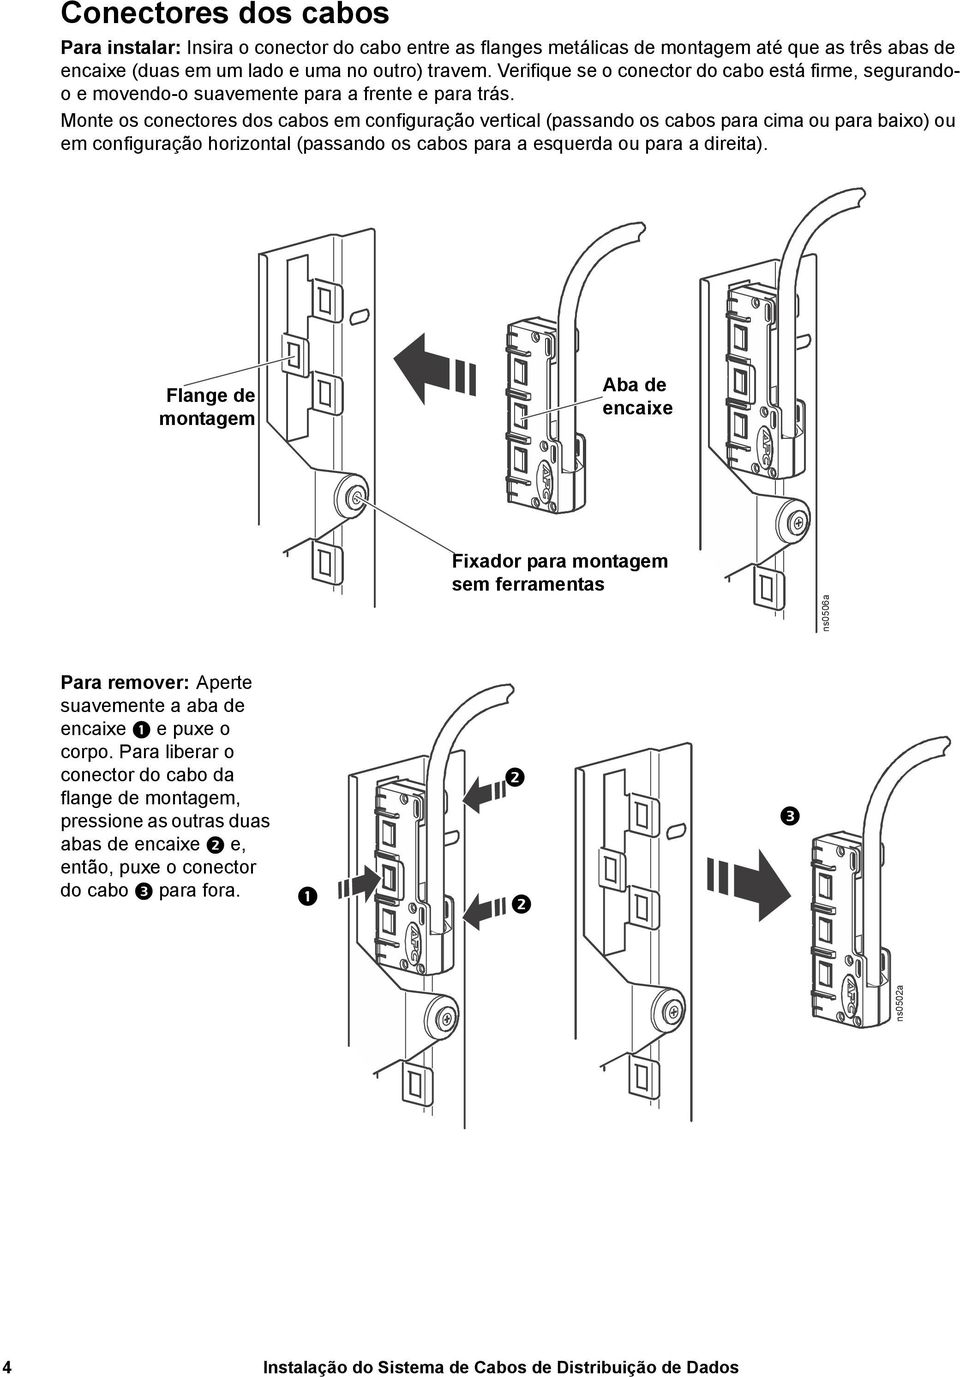 Monte os conectores dos cabos em configuração vertical (passando os cabos para cima ou para baixo) ou em configuração horizontal (passando os cabos para a esquerda ou para a direita).